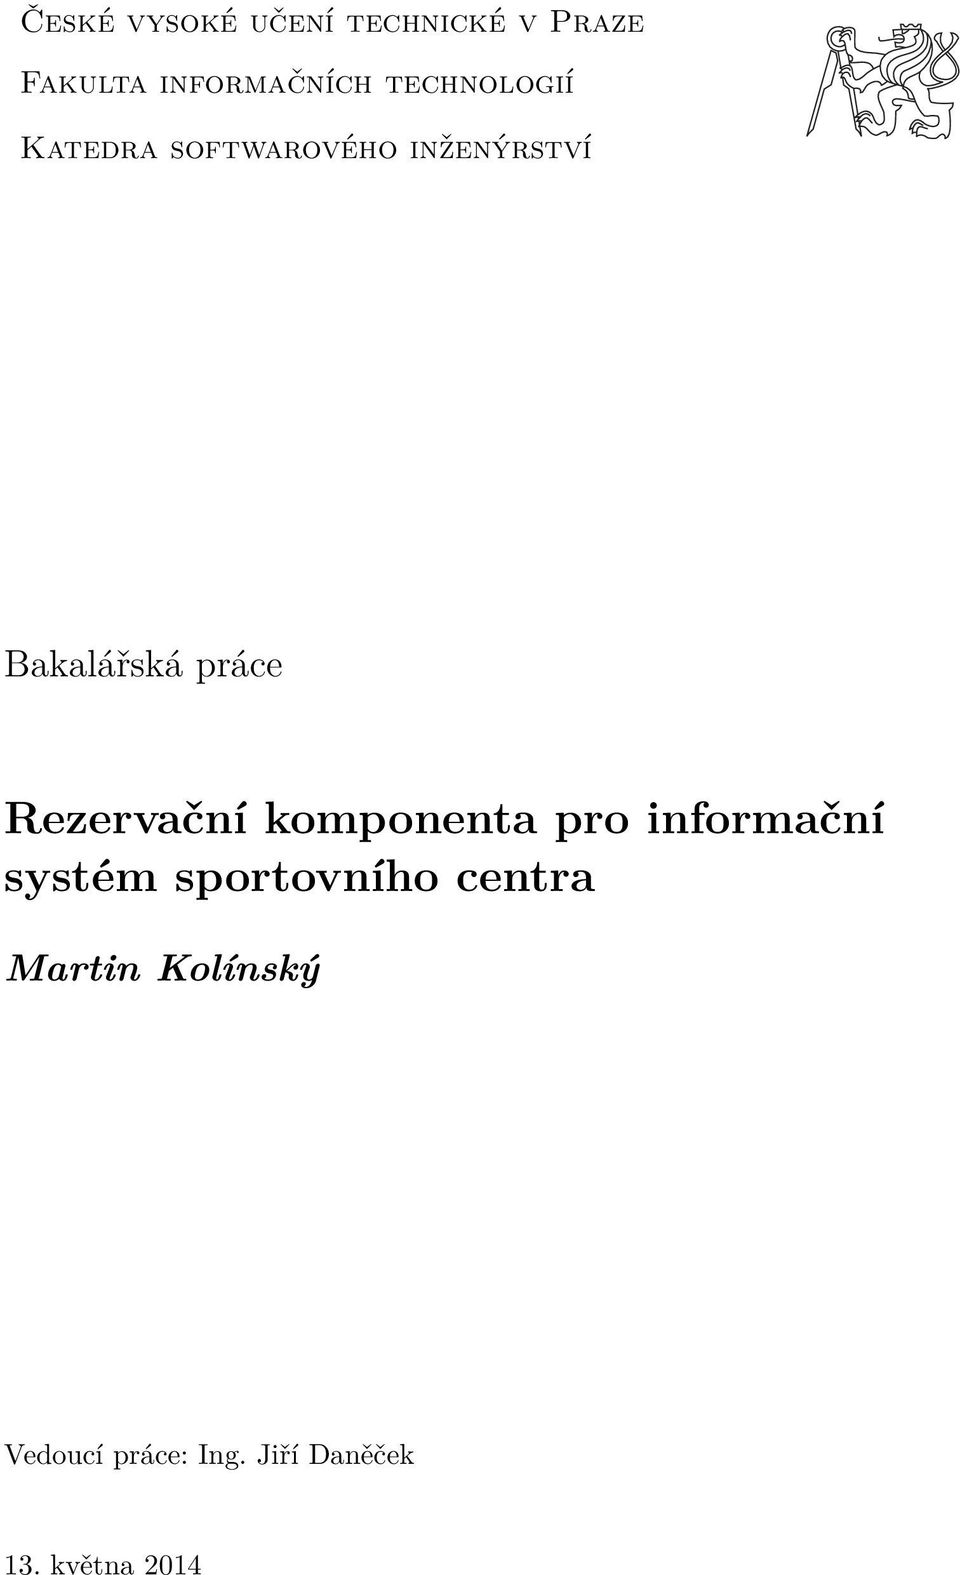 Rezervační komponenta pro informační systém sportovního